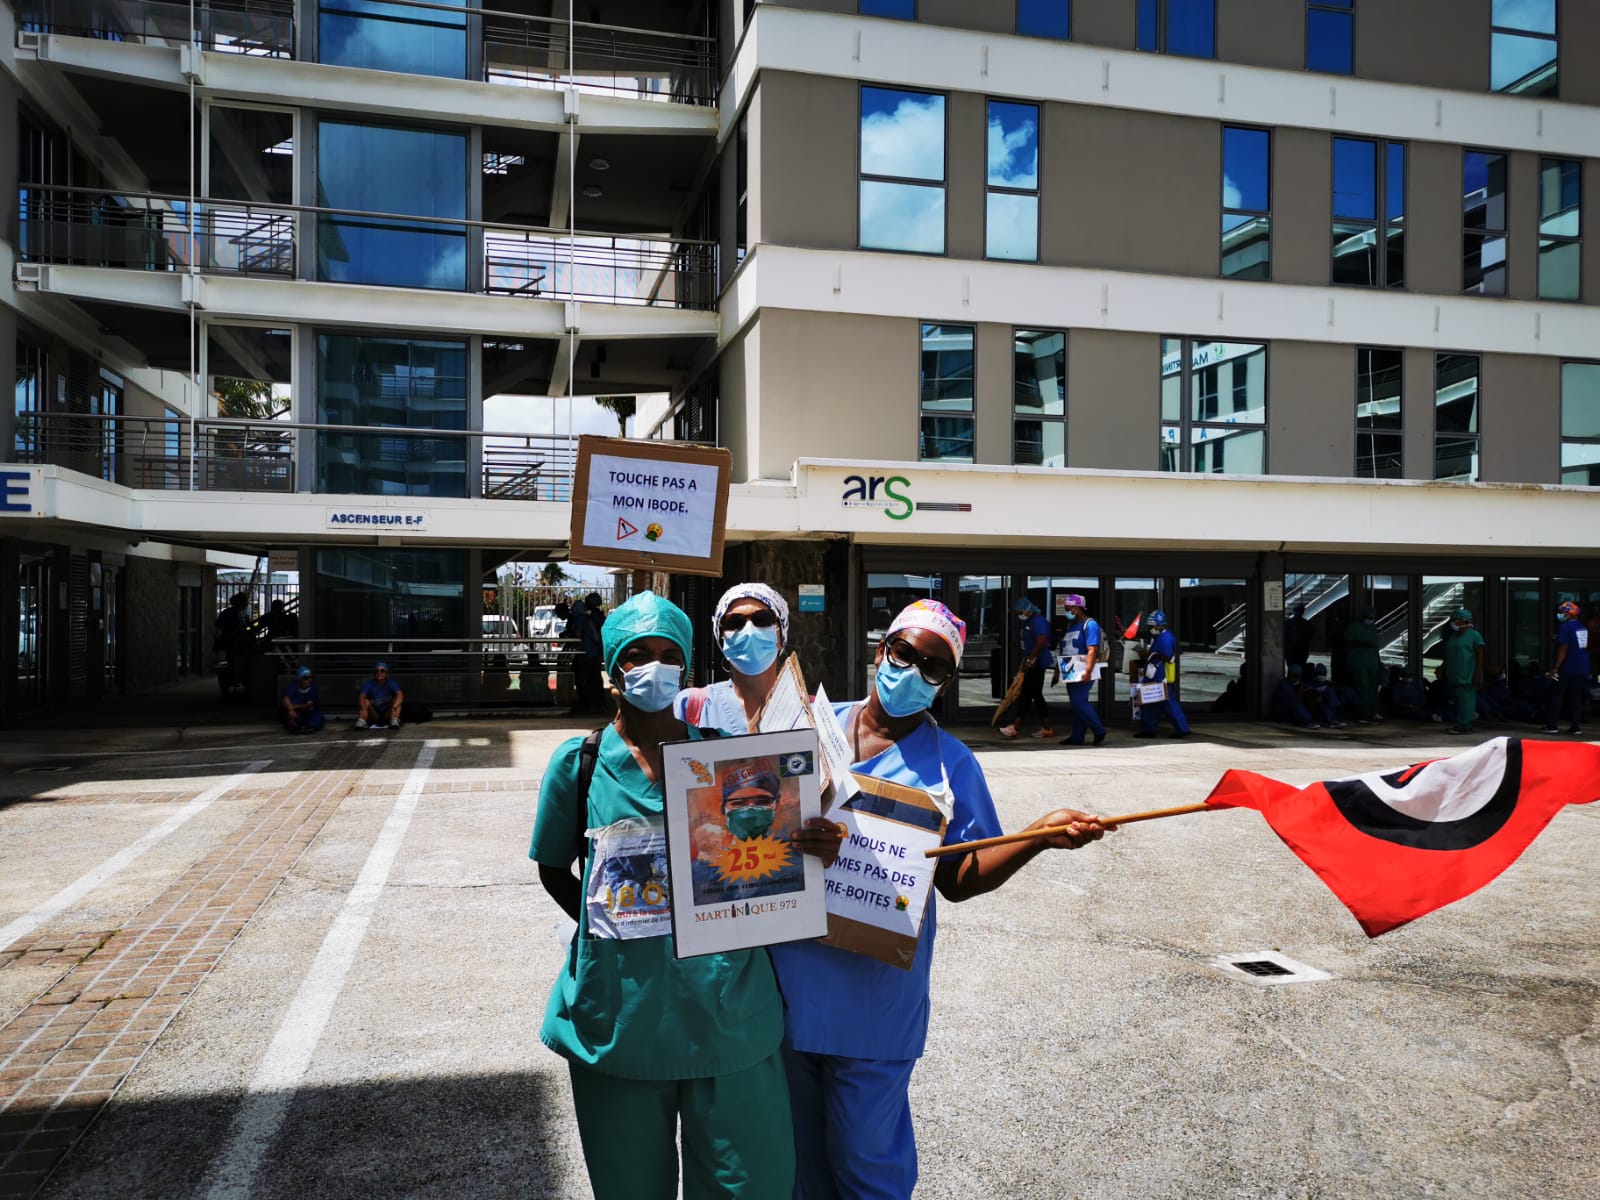     Mobilisation : les infirmiers du CHU se sont rendus à l'ARS

